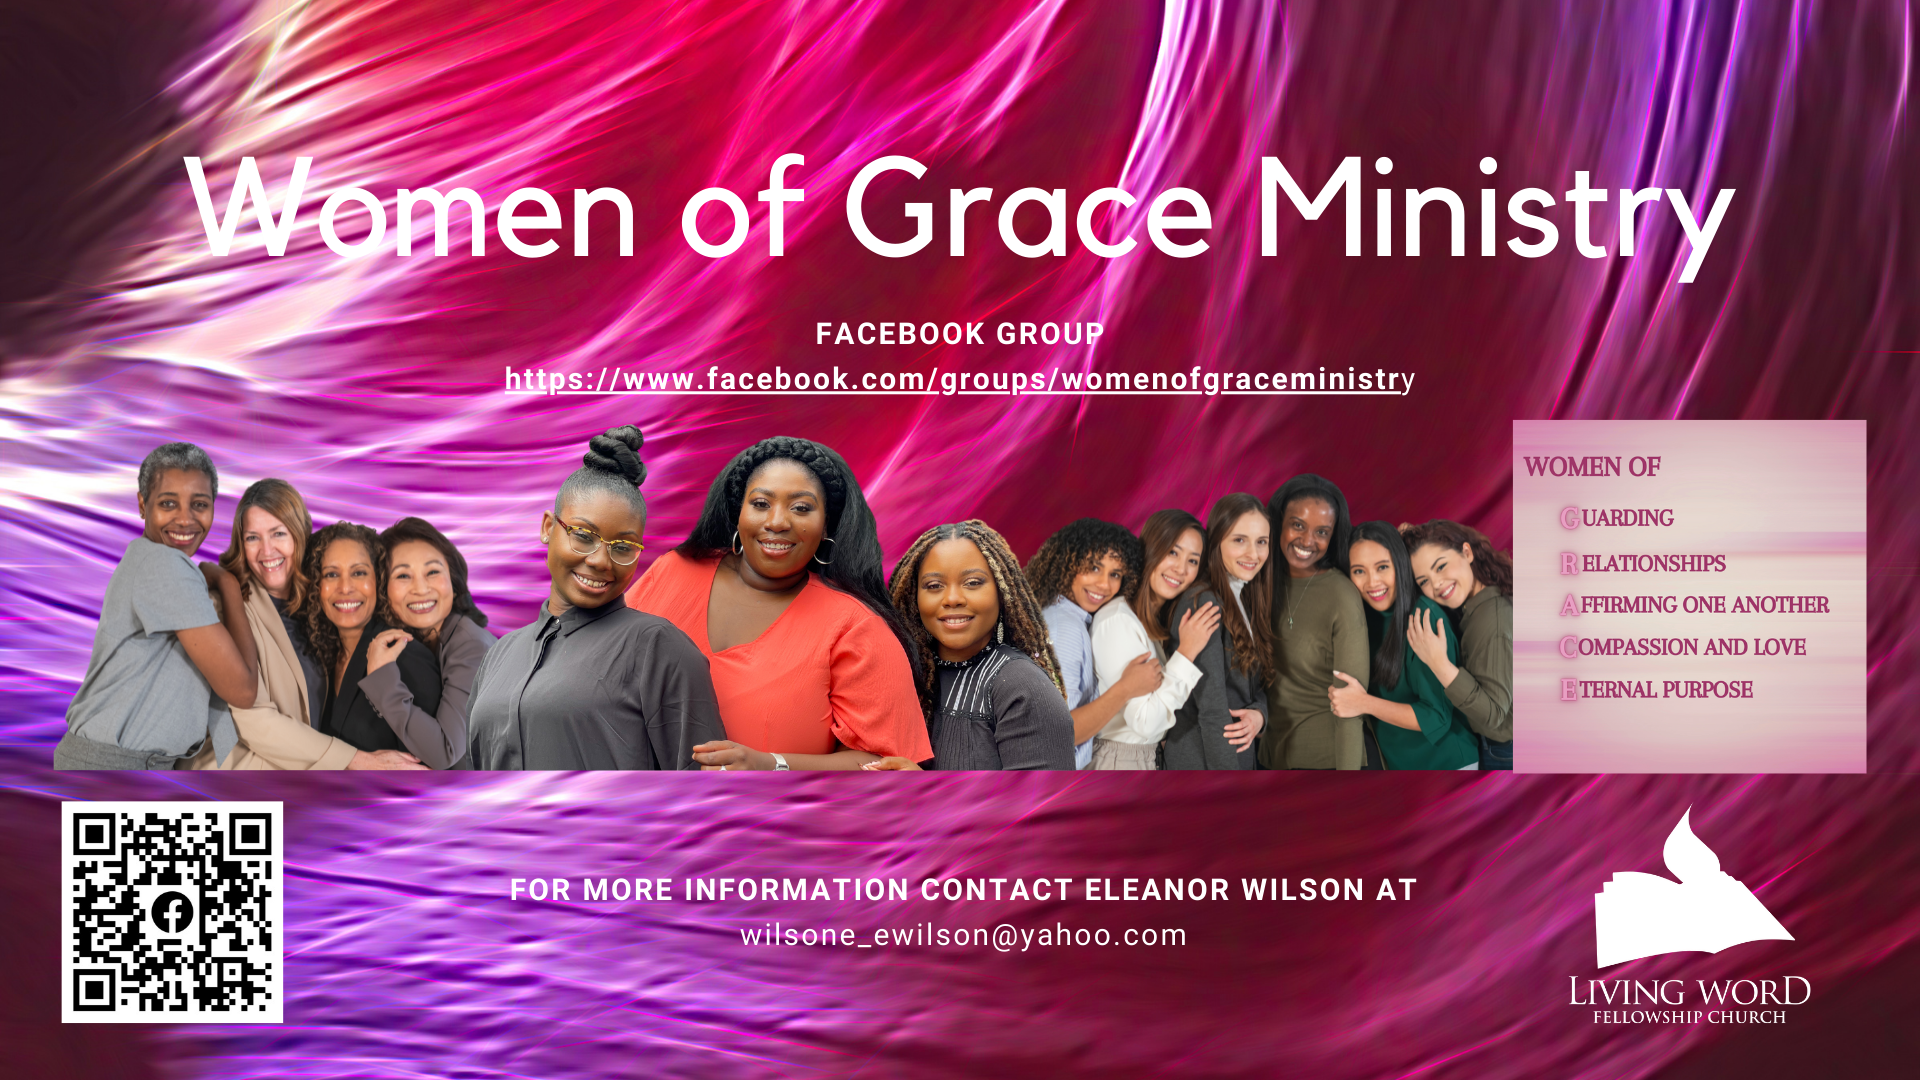 Women of Grace Ministry head image